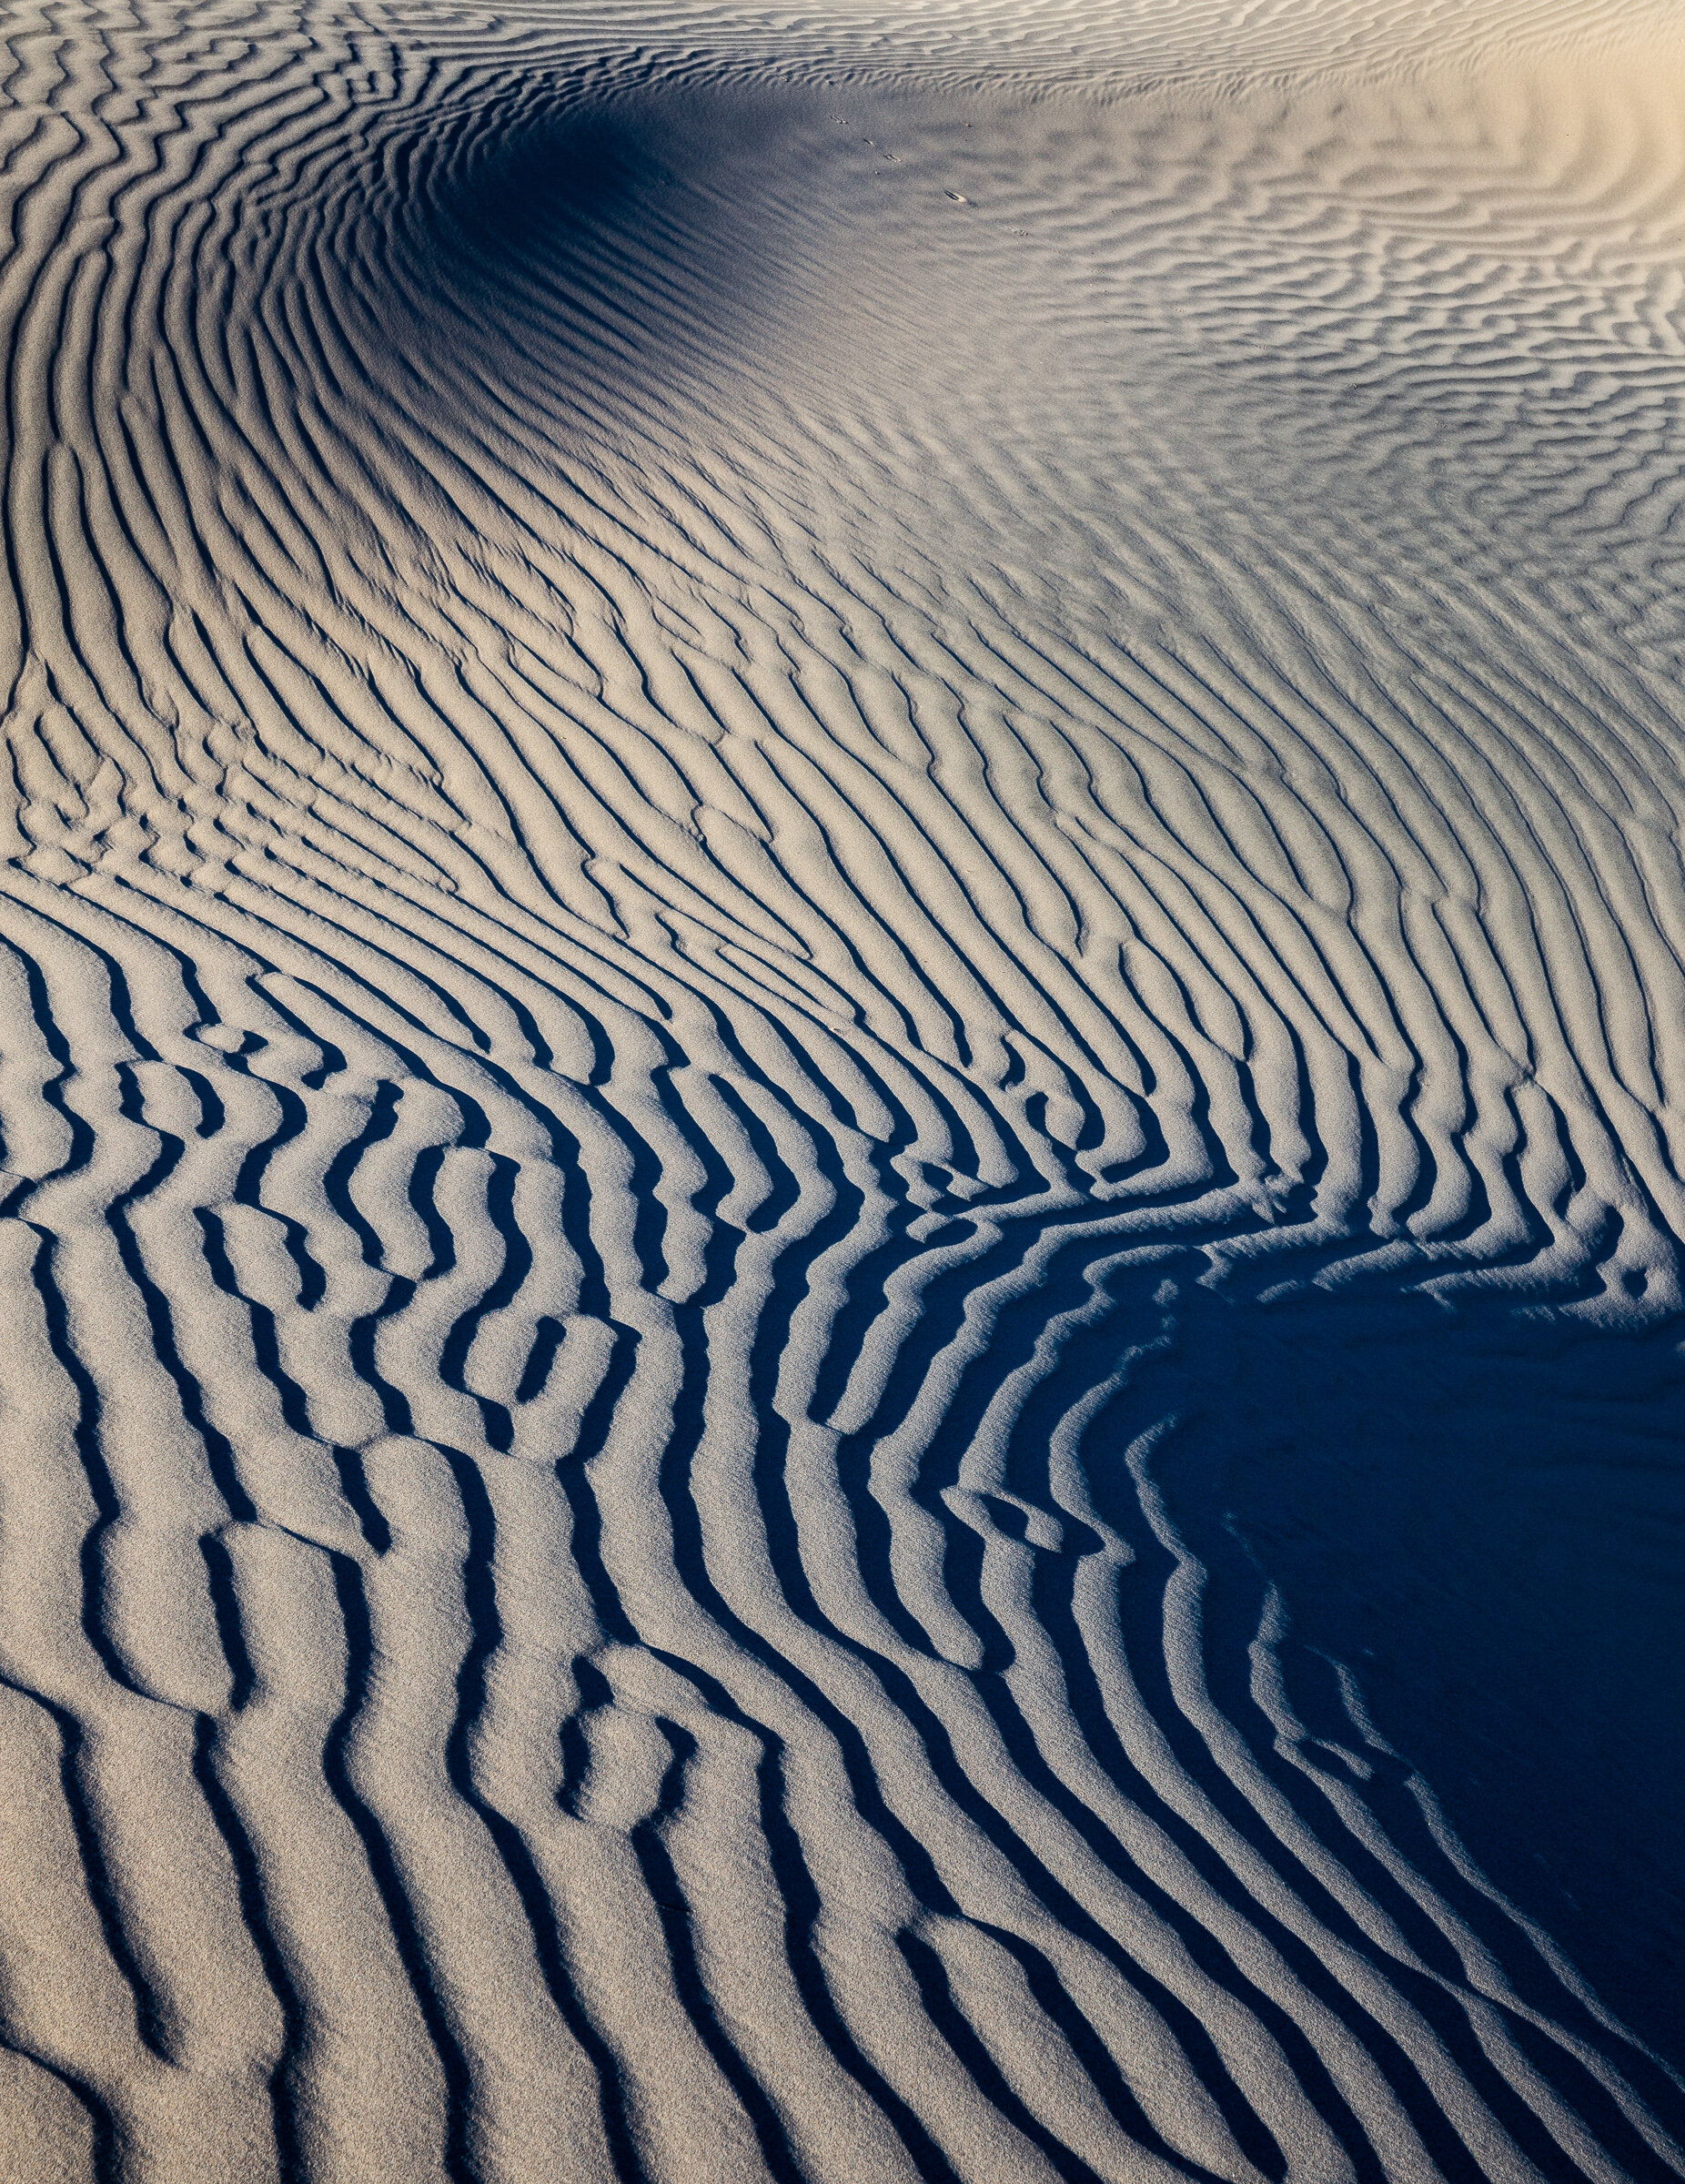 DesertFingerprint.jpg